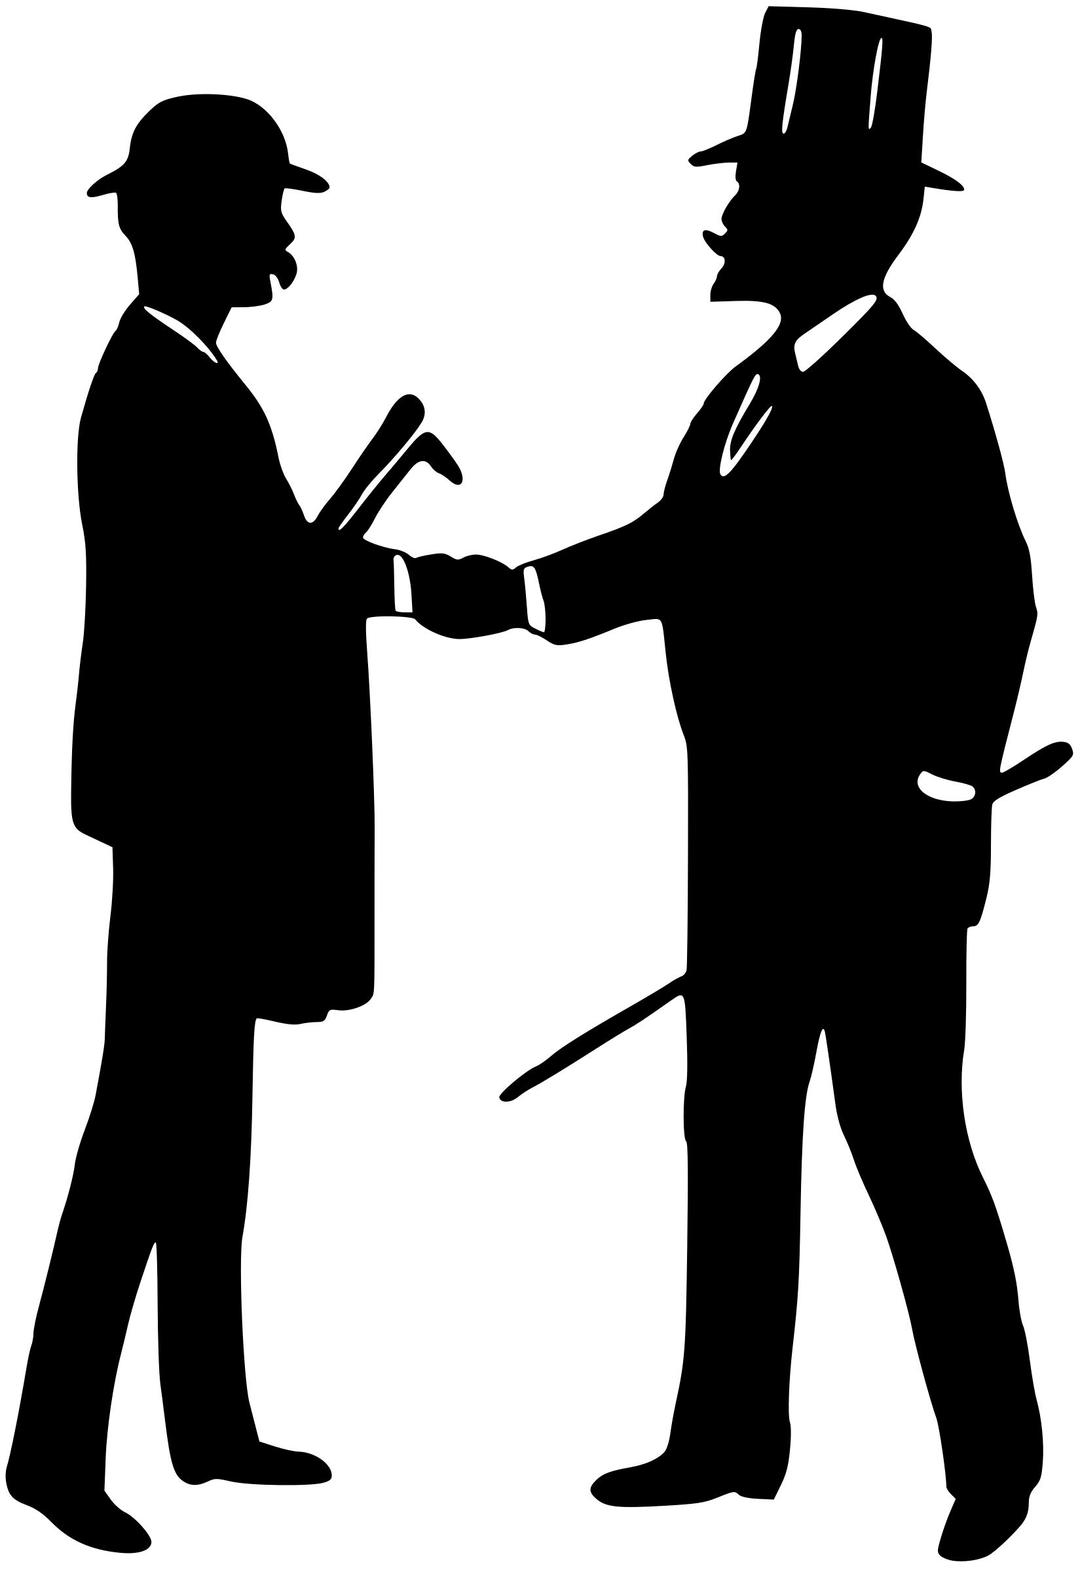 Gentlemen shaking hands png transparent